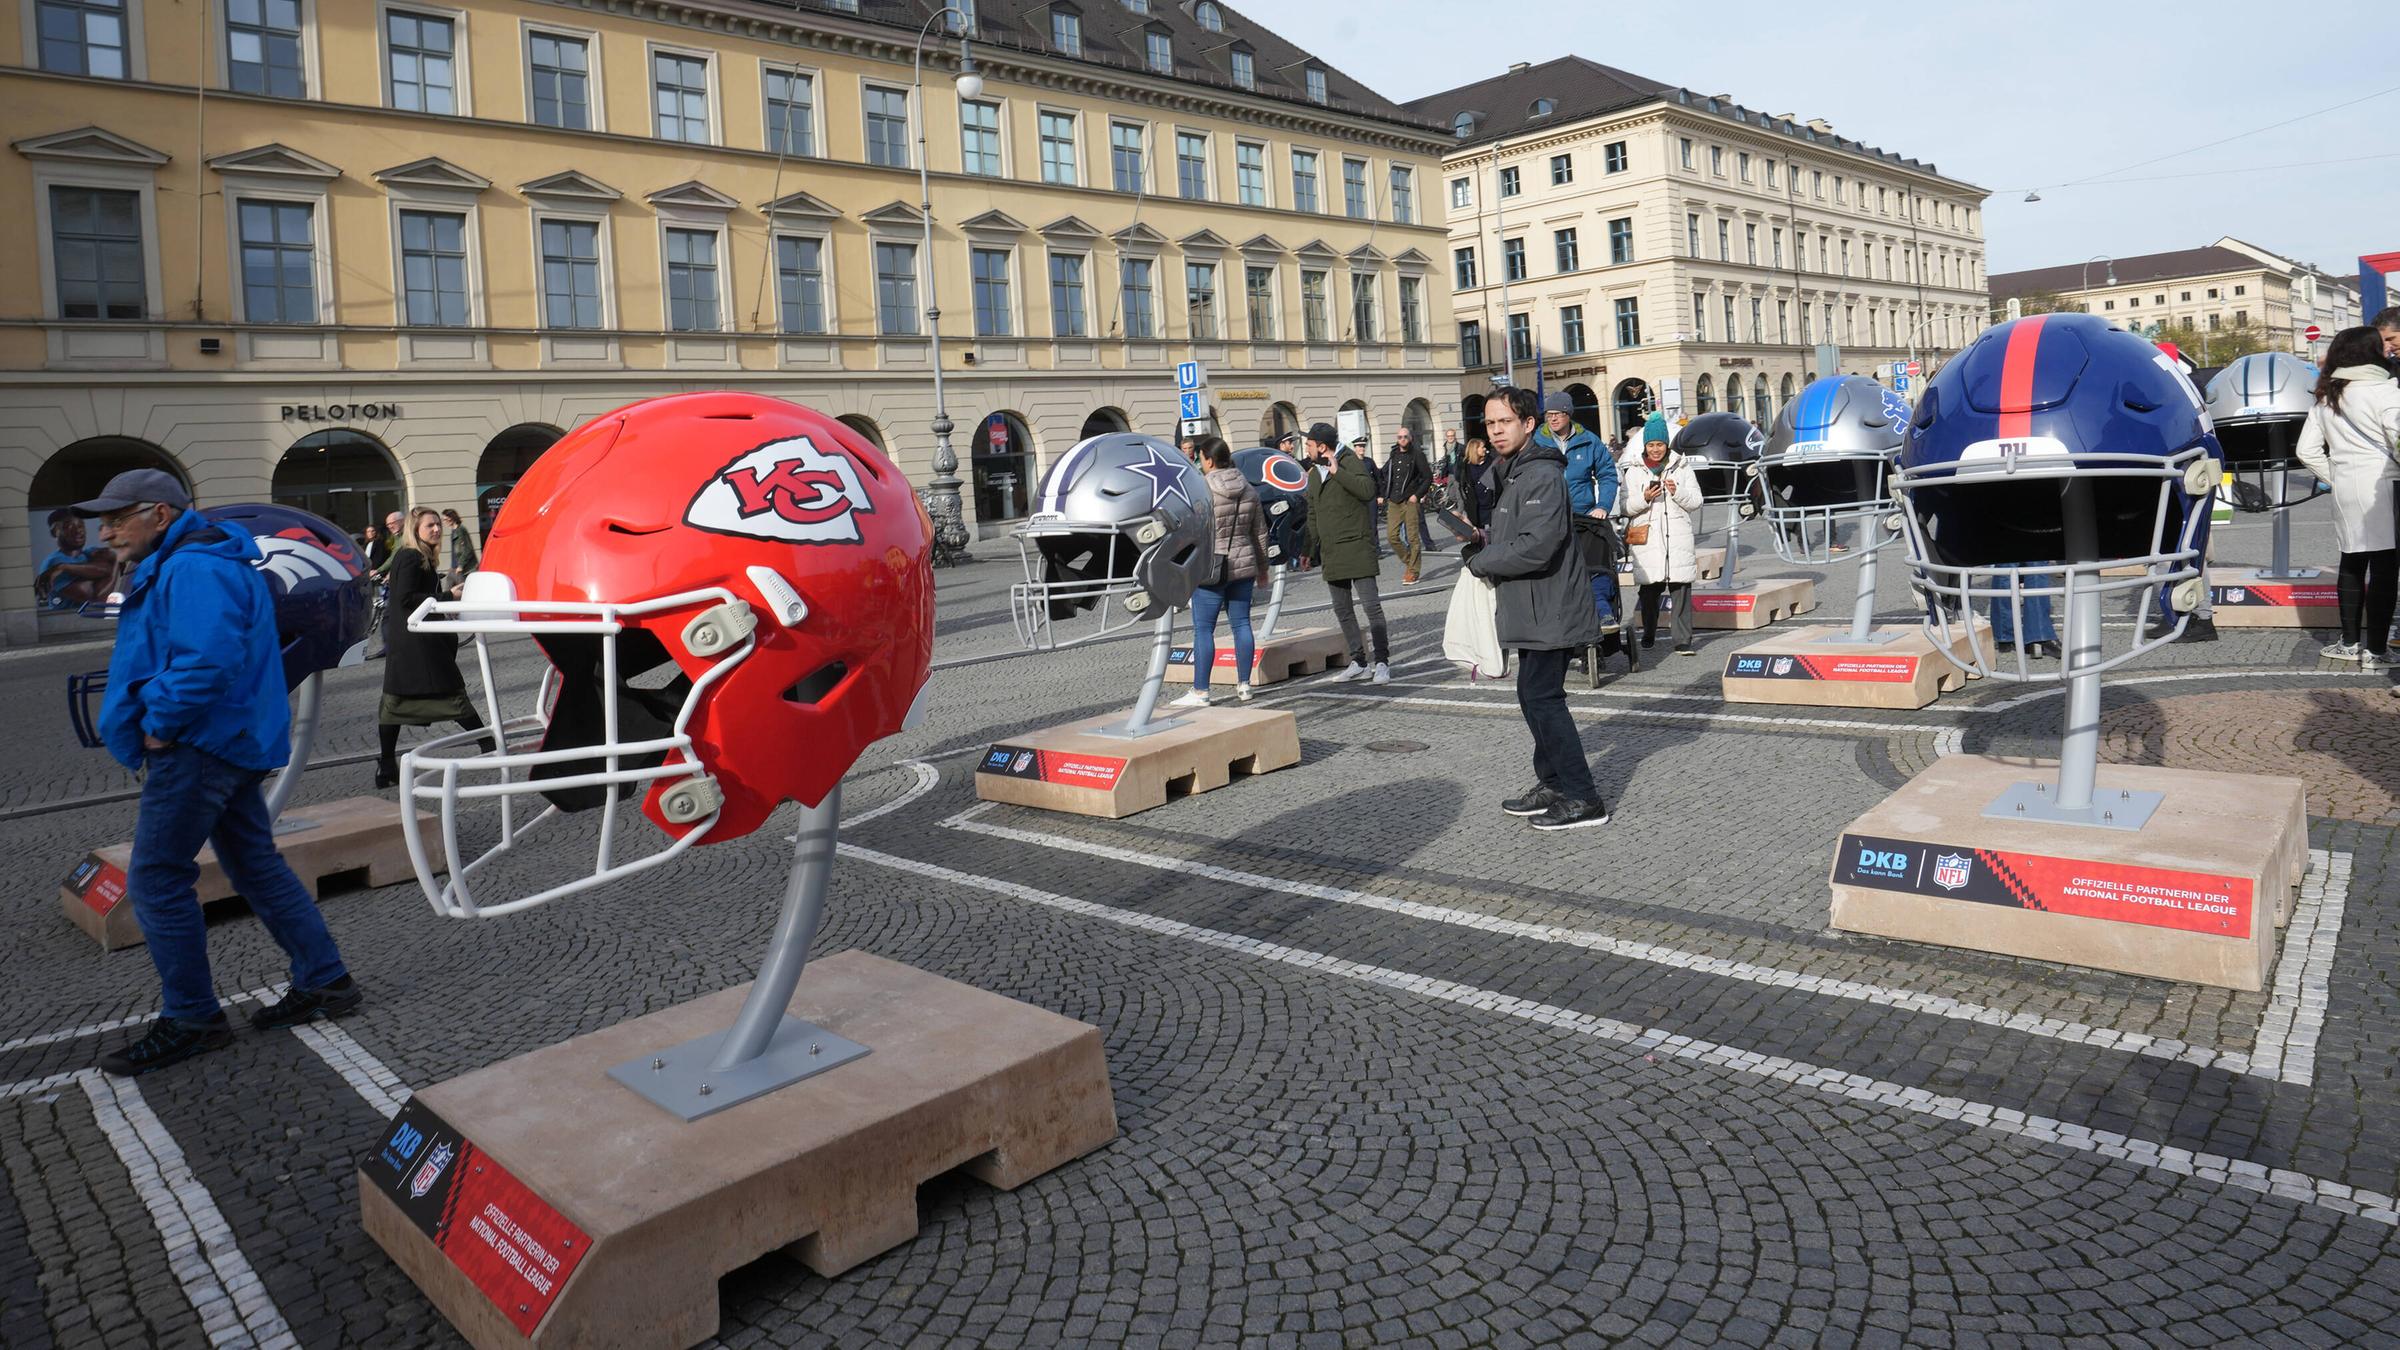 Werbeaktion der NFL mit überdimensionalen Football-Helmen auf dem Münchner Odeonsplatz vor dem Munich Game